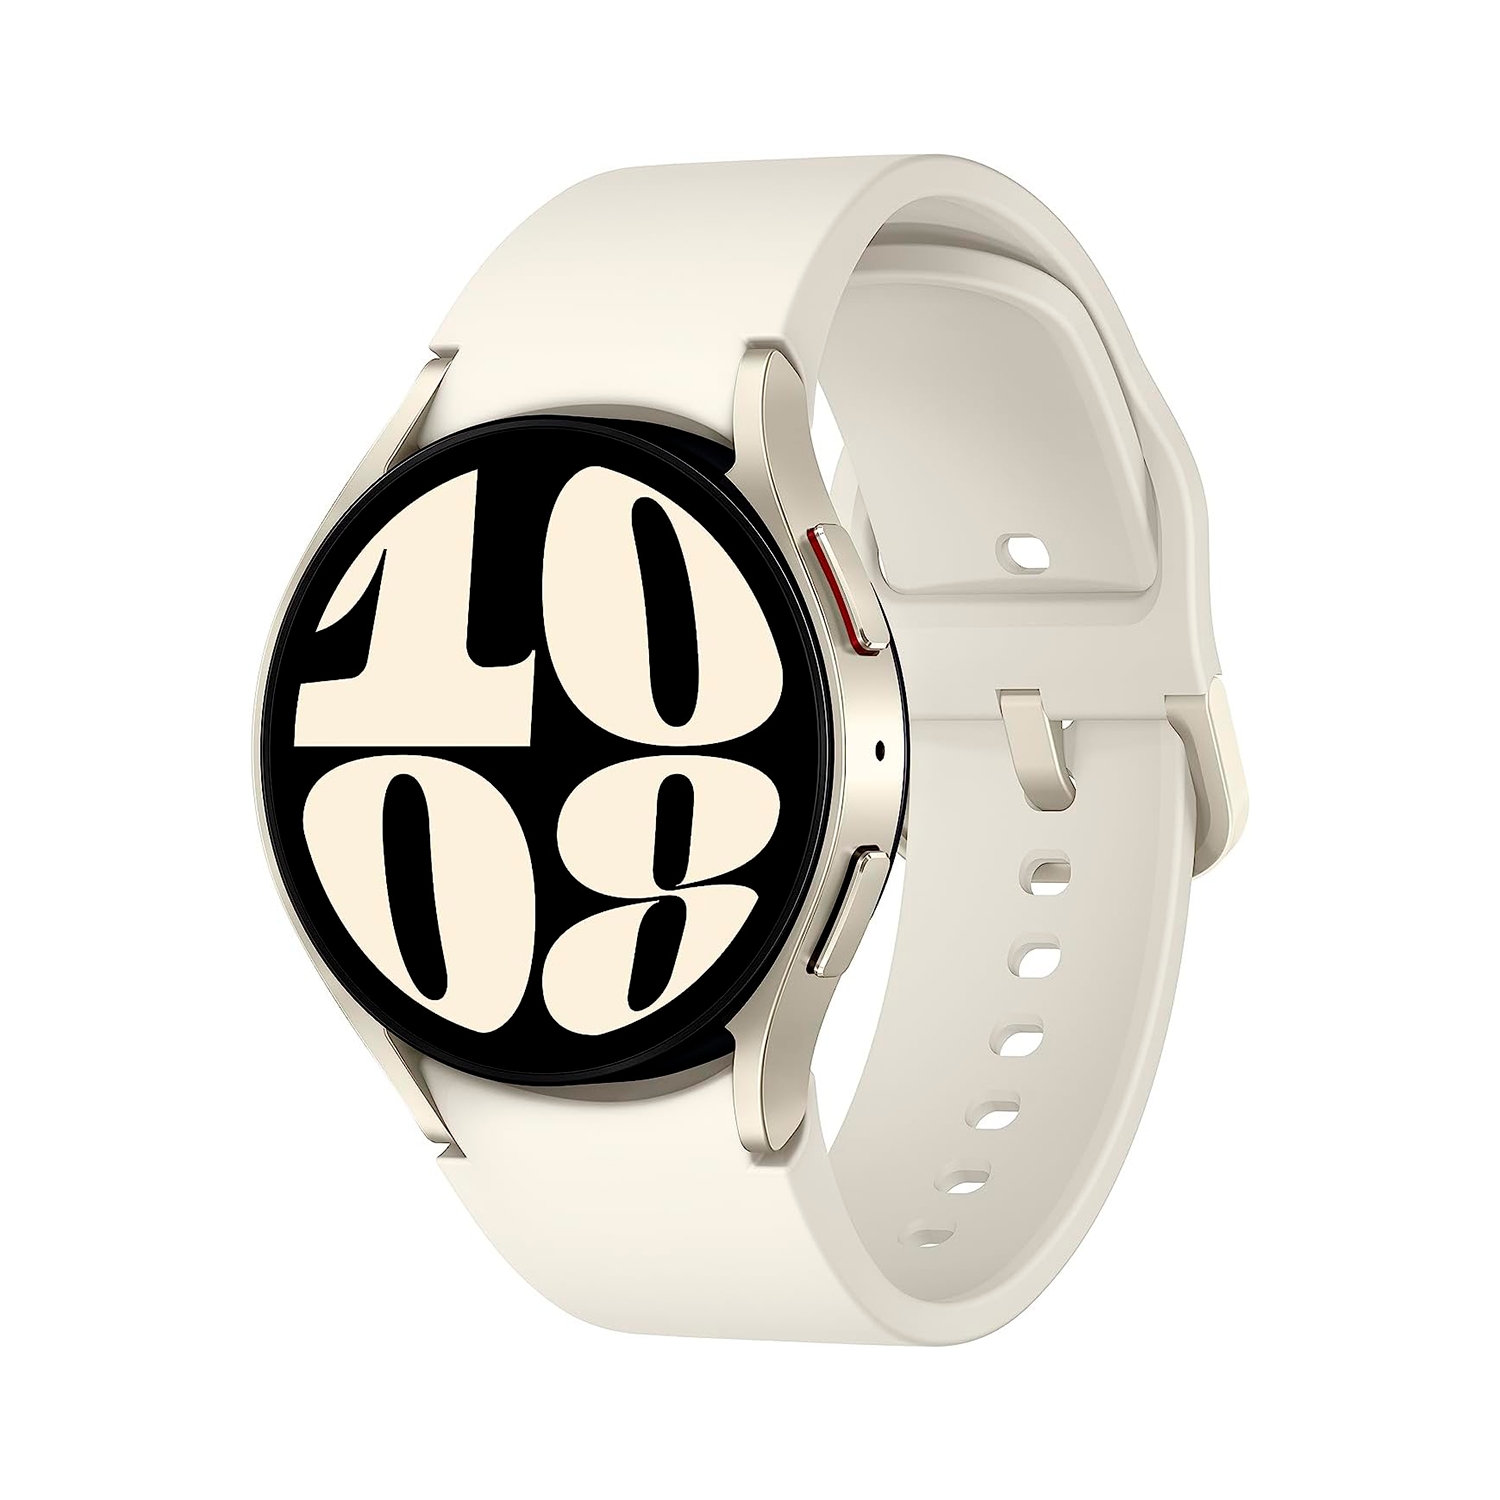 Ofertas Cyberlunes - Descuentos Blackfriday Smartwatch Samsung en Falabella